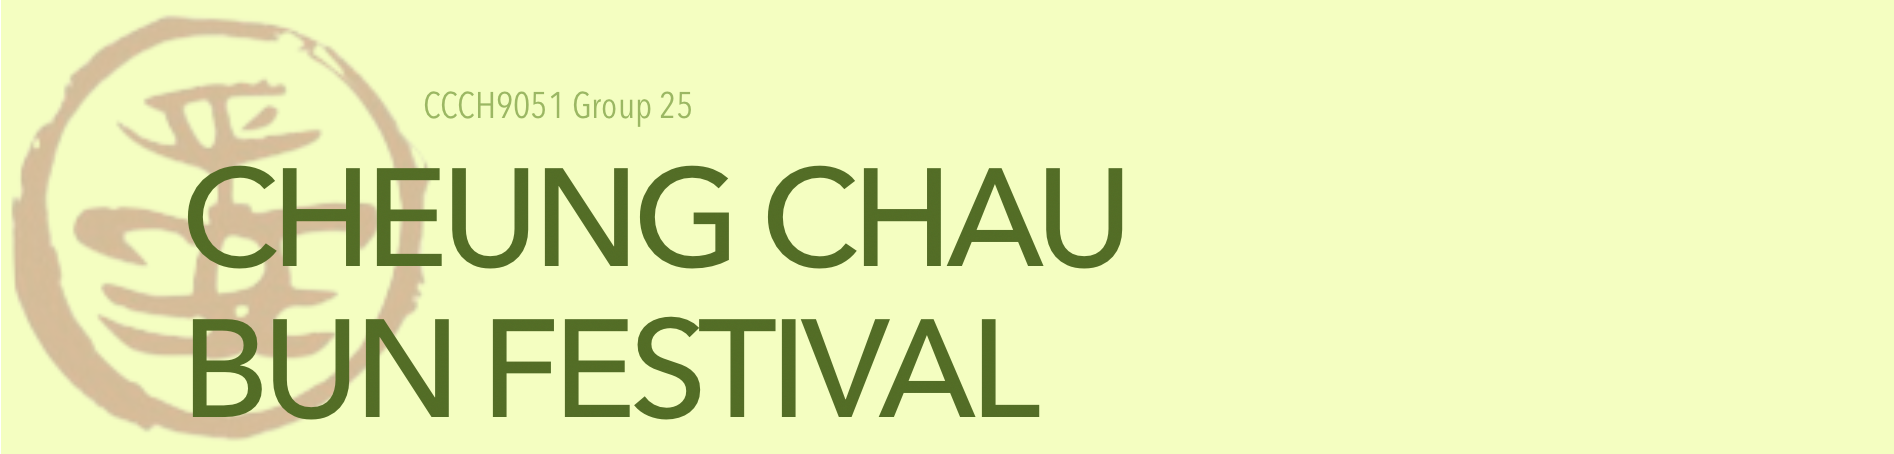 Cheung Chau Bun Festival - CCCH9051 Group 25